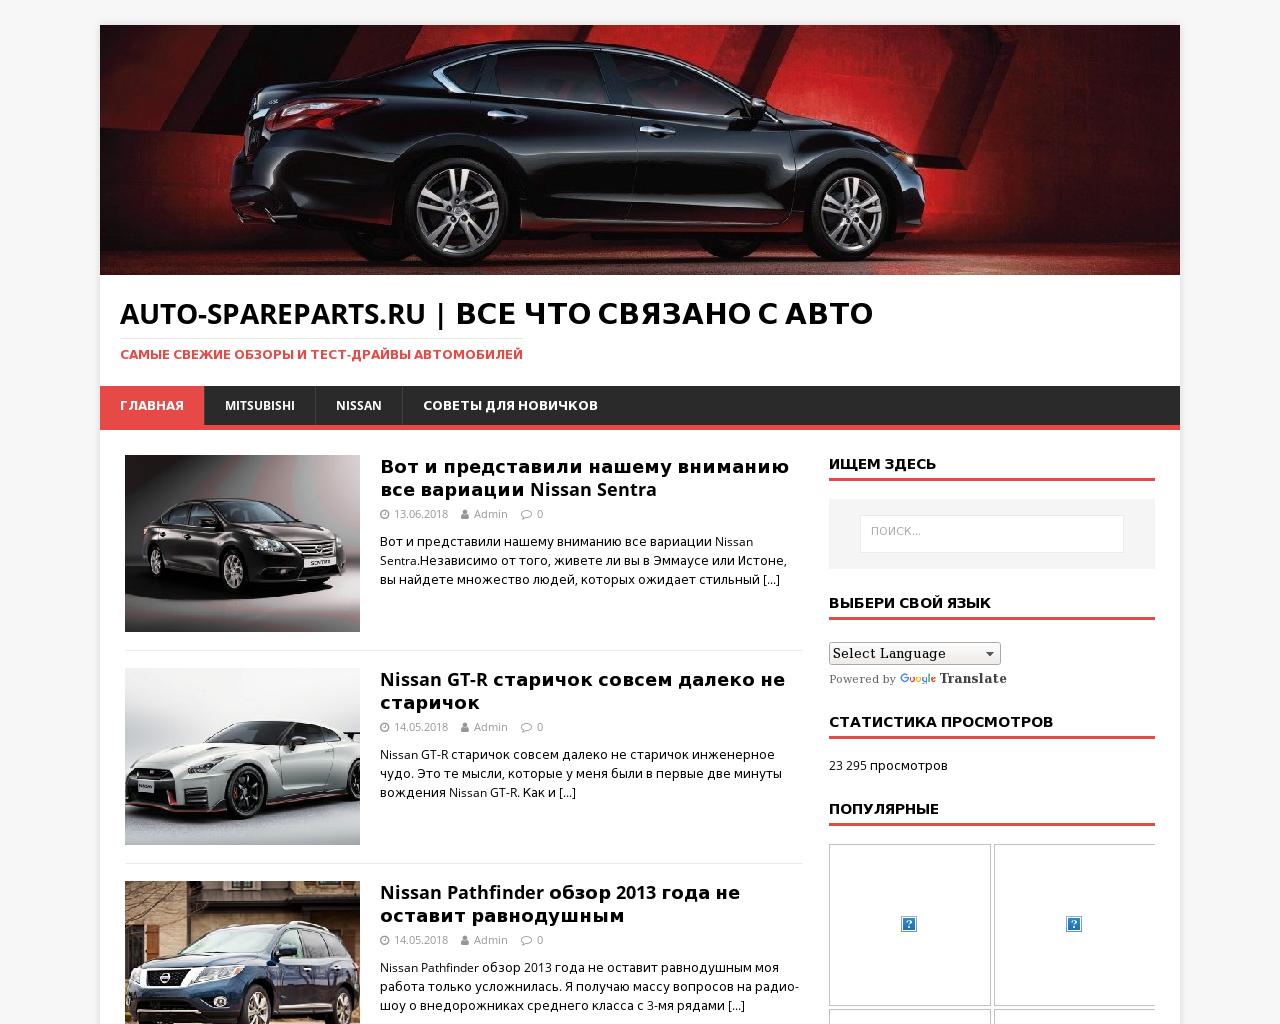 Изображение сайта auto-spareparts.ru в разрешении 1280x1024